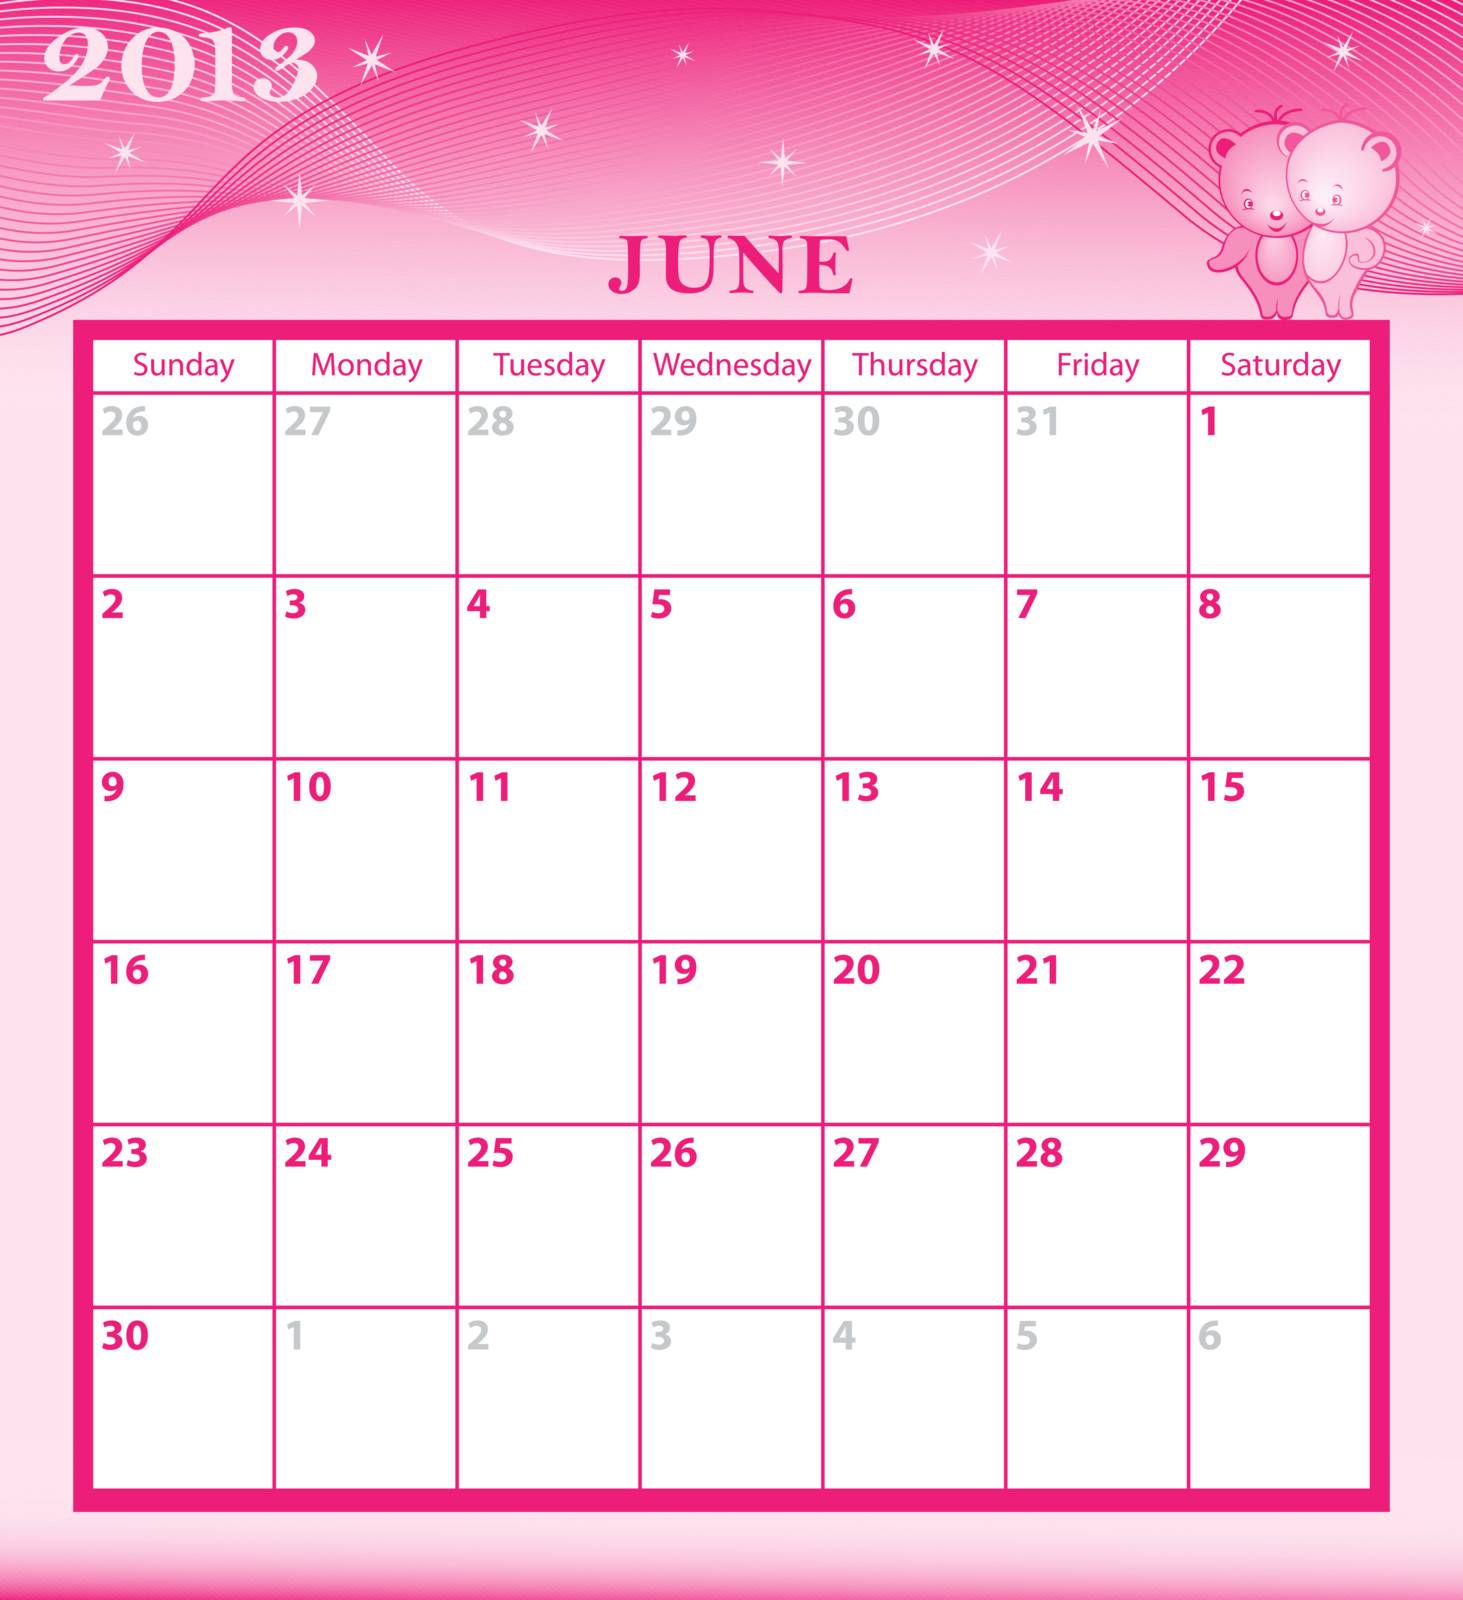 Calendar 2013 June by toots